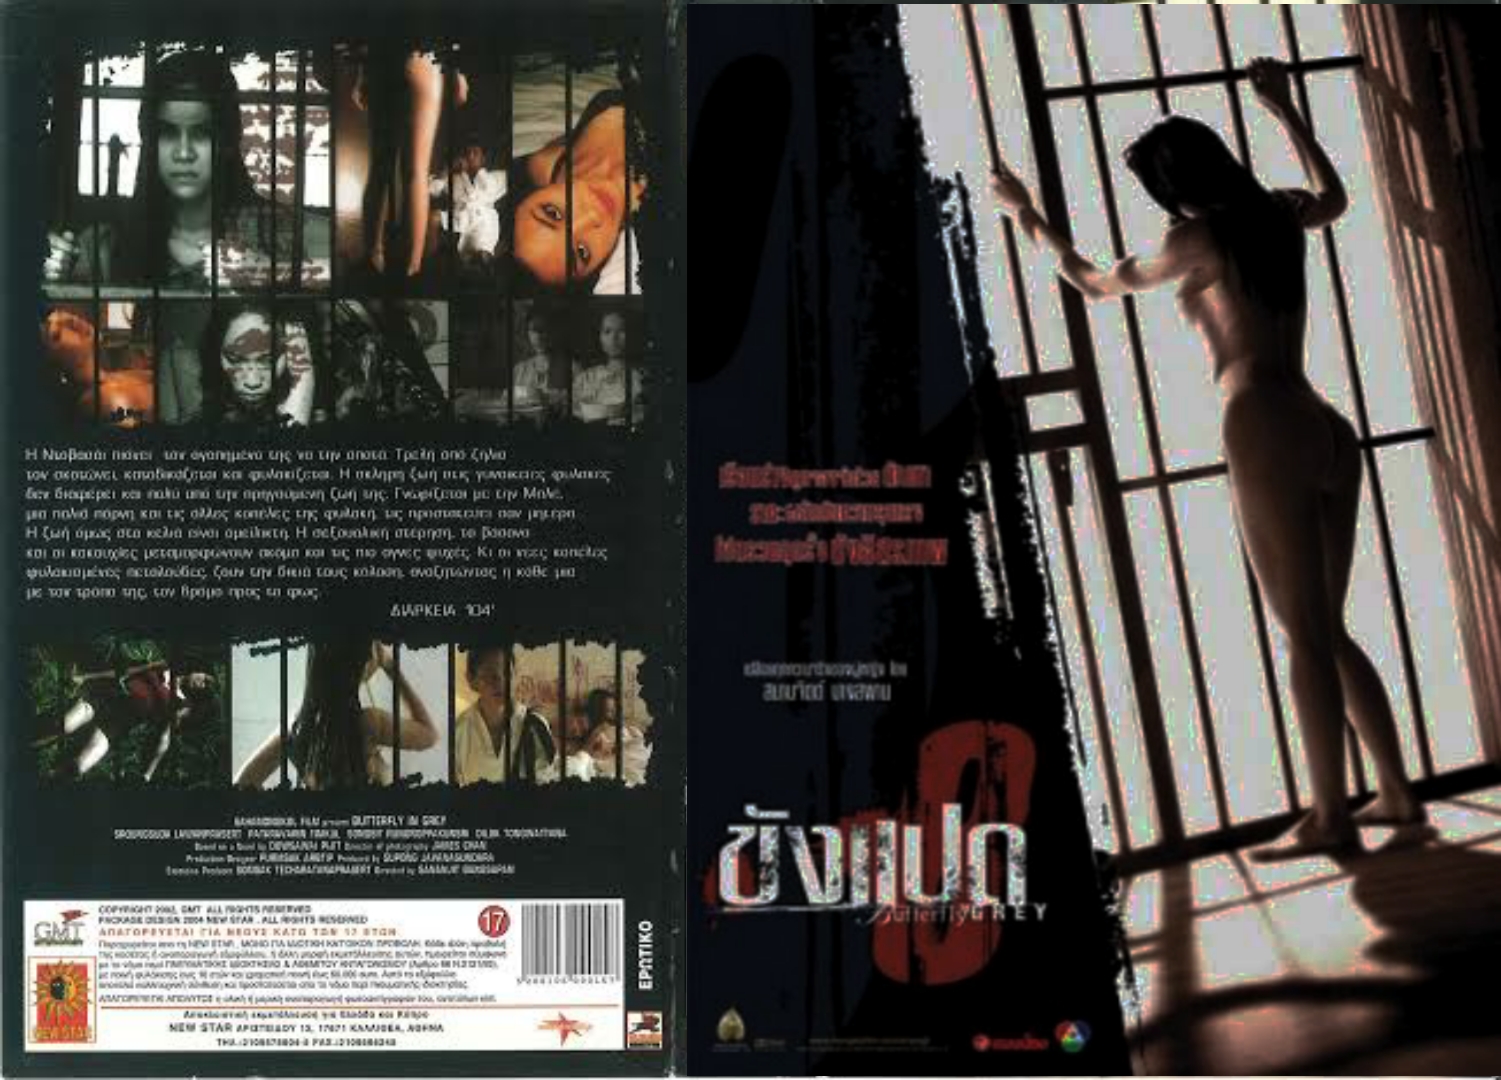 ดูหนังอาร์ไทย Butterfly in Grey (2002) ขังแปด เย็ดนักโทษหญิงในเรือนจำ โดนผู้คุมเวียนเทียนเย็ดกันคนละน้ำ xxx เงี่ยนหีมานานโดนจัดหนักทั้งเรือนจำ